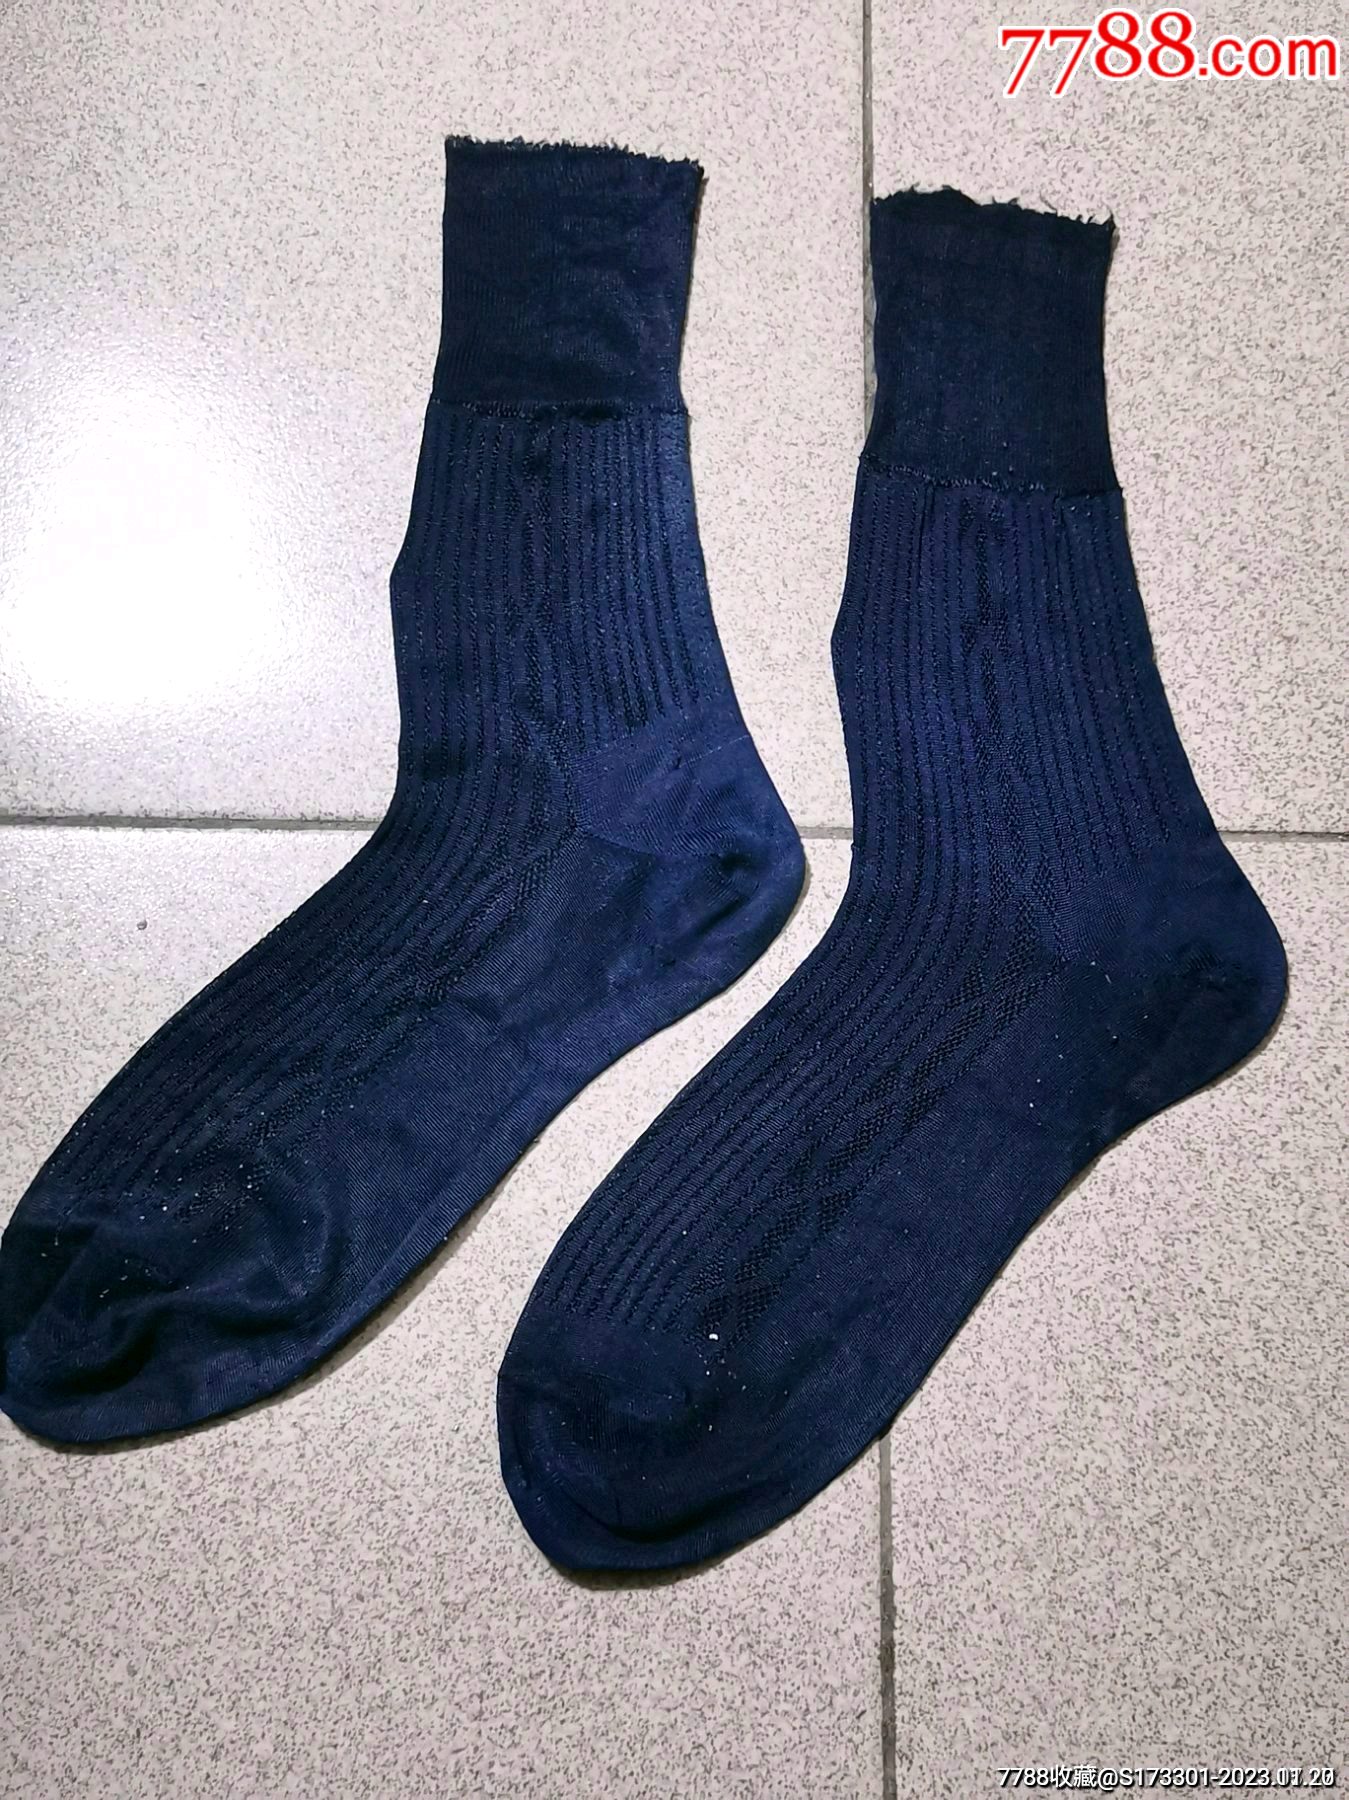 丝袜袜子￥109品99丝袜袜子单只￥109品99二手丝袜袜子￥109品9